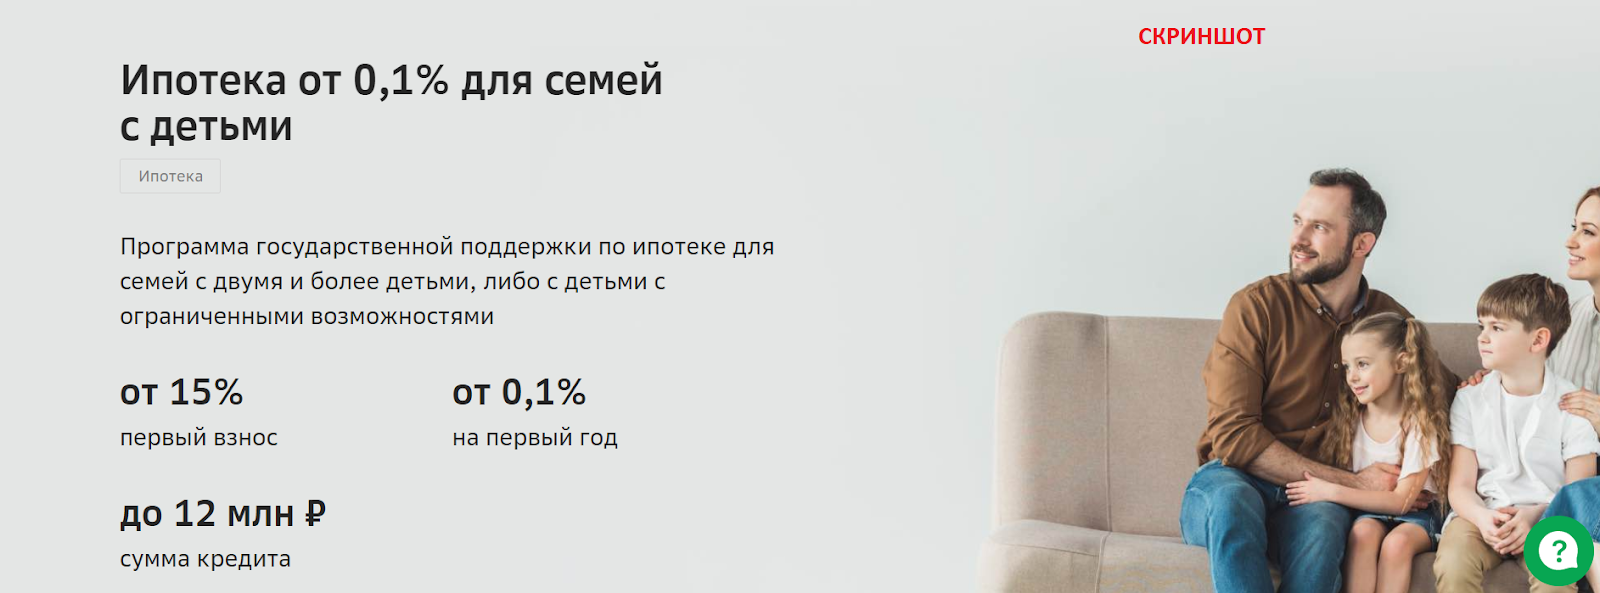 Ипотека в турции для россиян в 2020 году - prian.ru